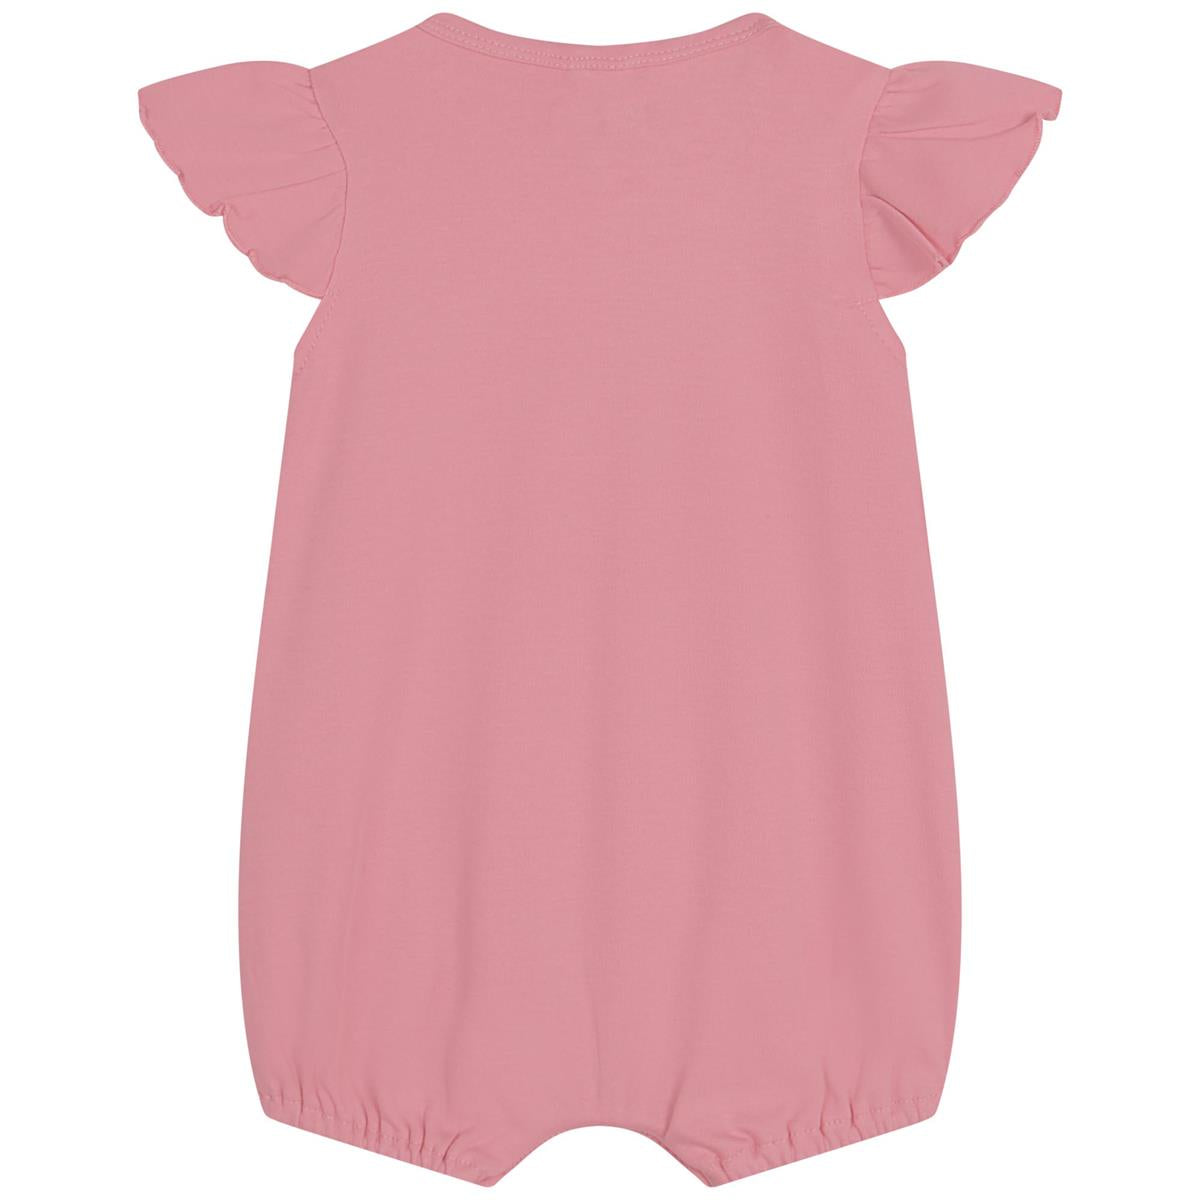 Baby Girls Pink Printed Babysuit